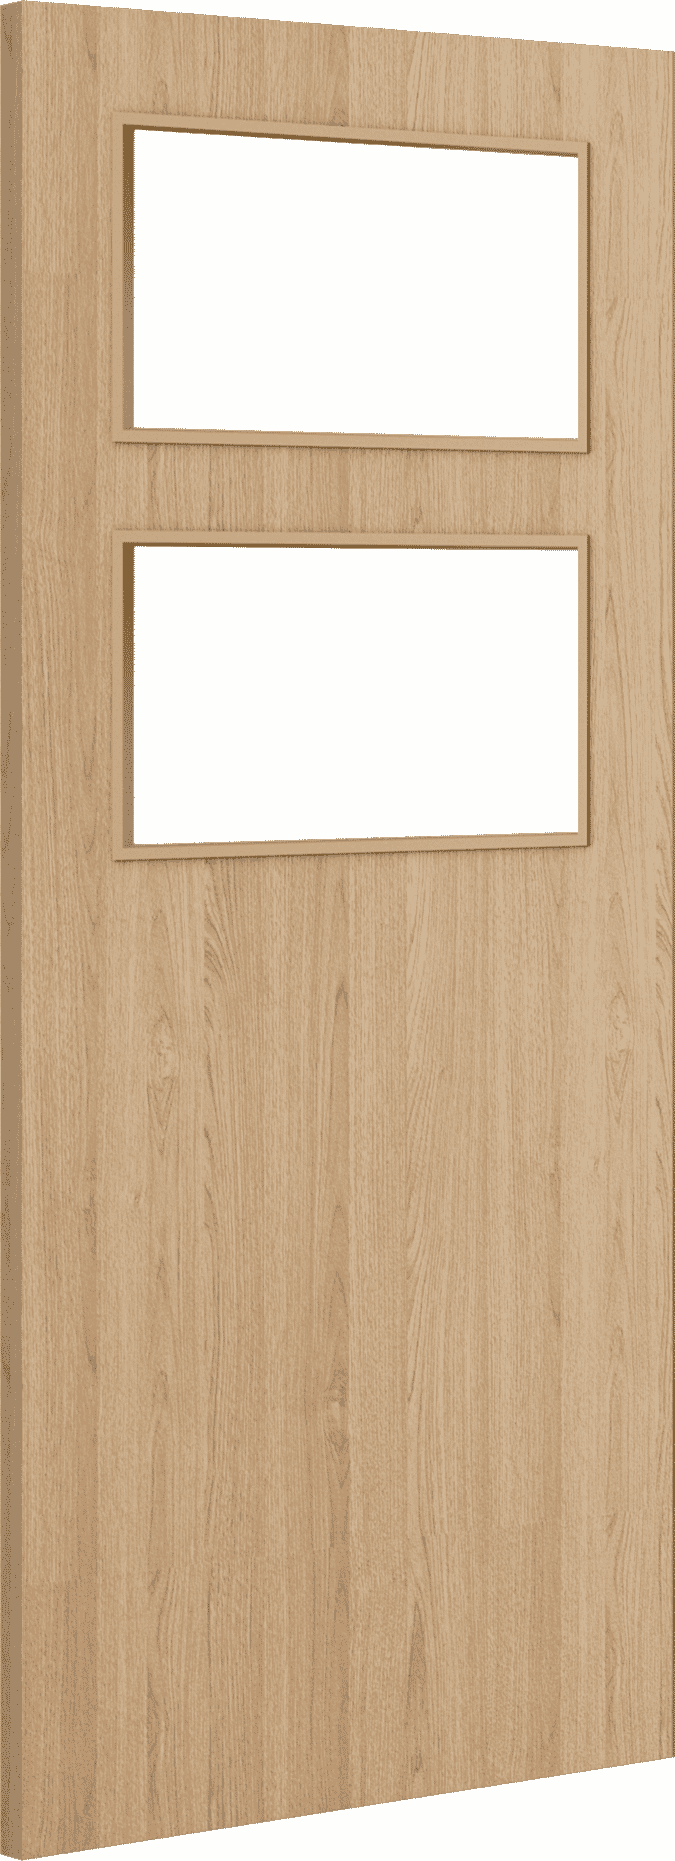 1981mm x 533mm x 44mm (21") Architectural Oak 02 Clear Glazed - Prefinished FD30 Fire Door Blank